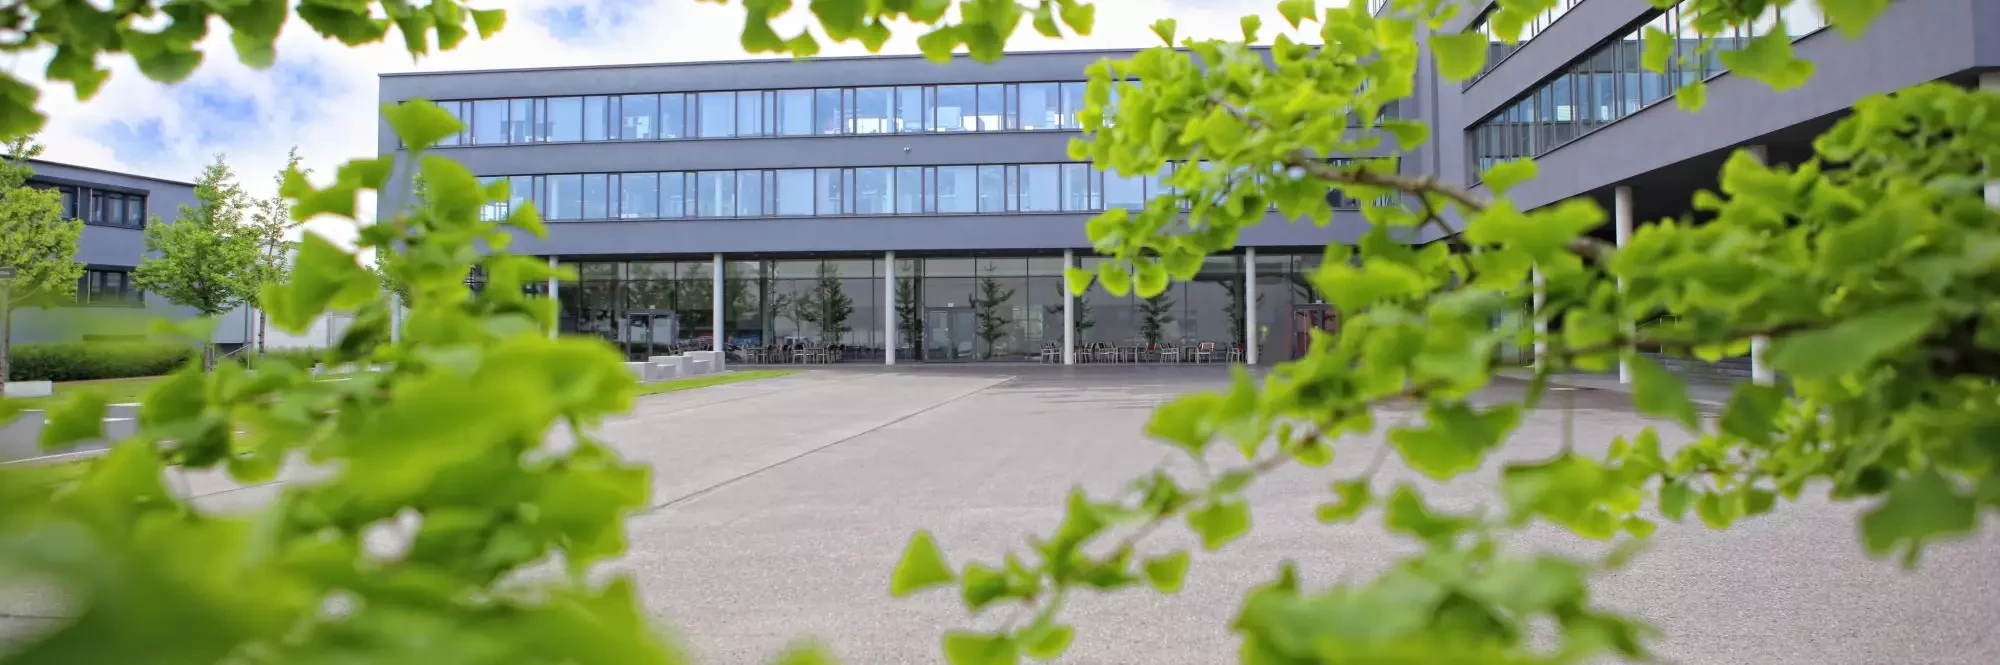 Dürr AG | Headquarter in Bietigheim-Bissingen, Germany